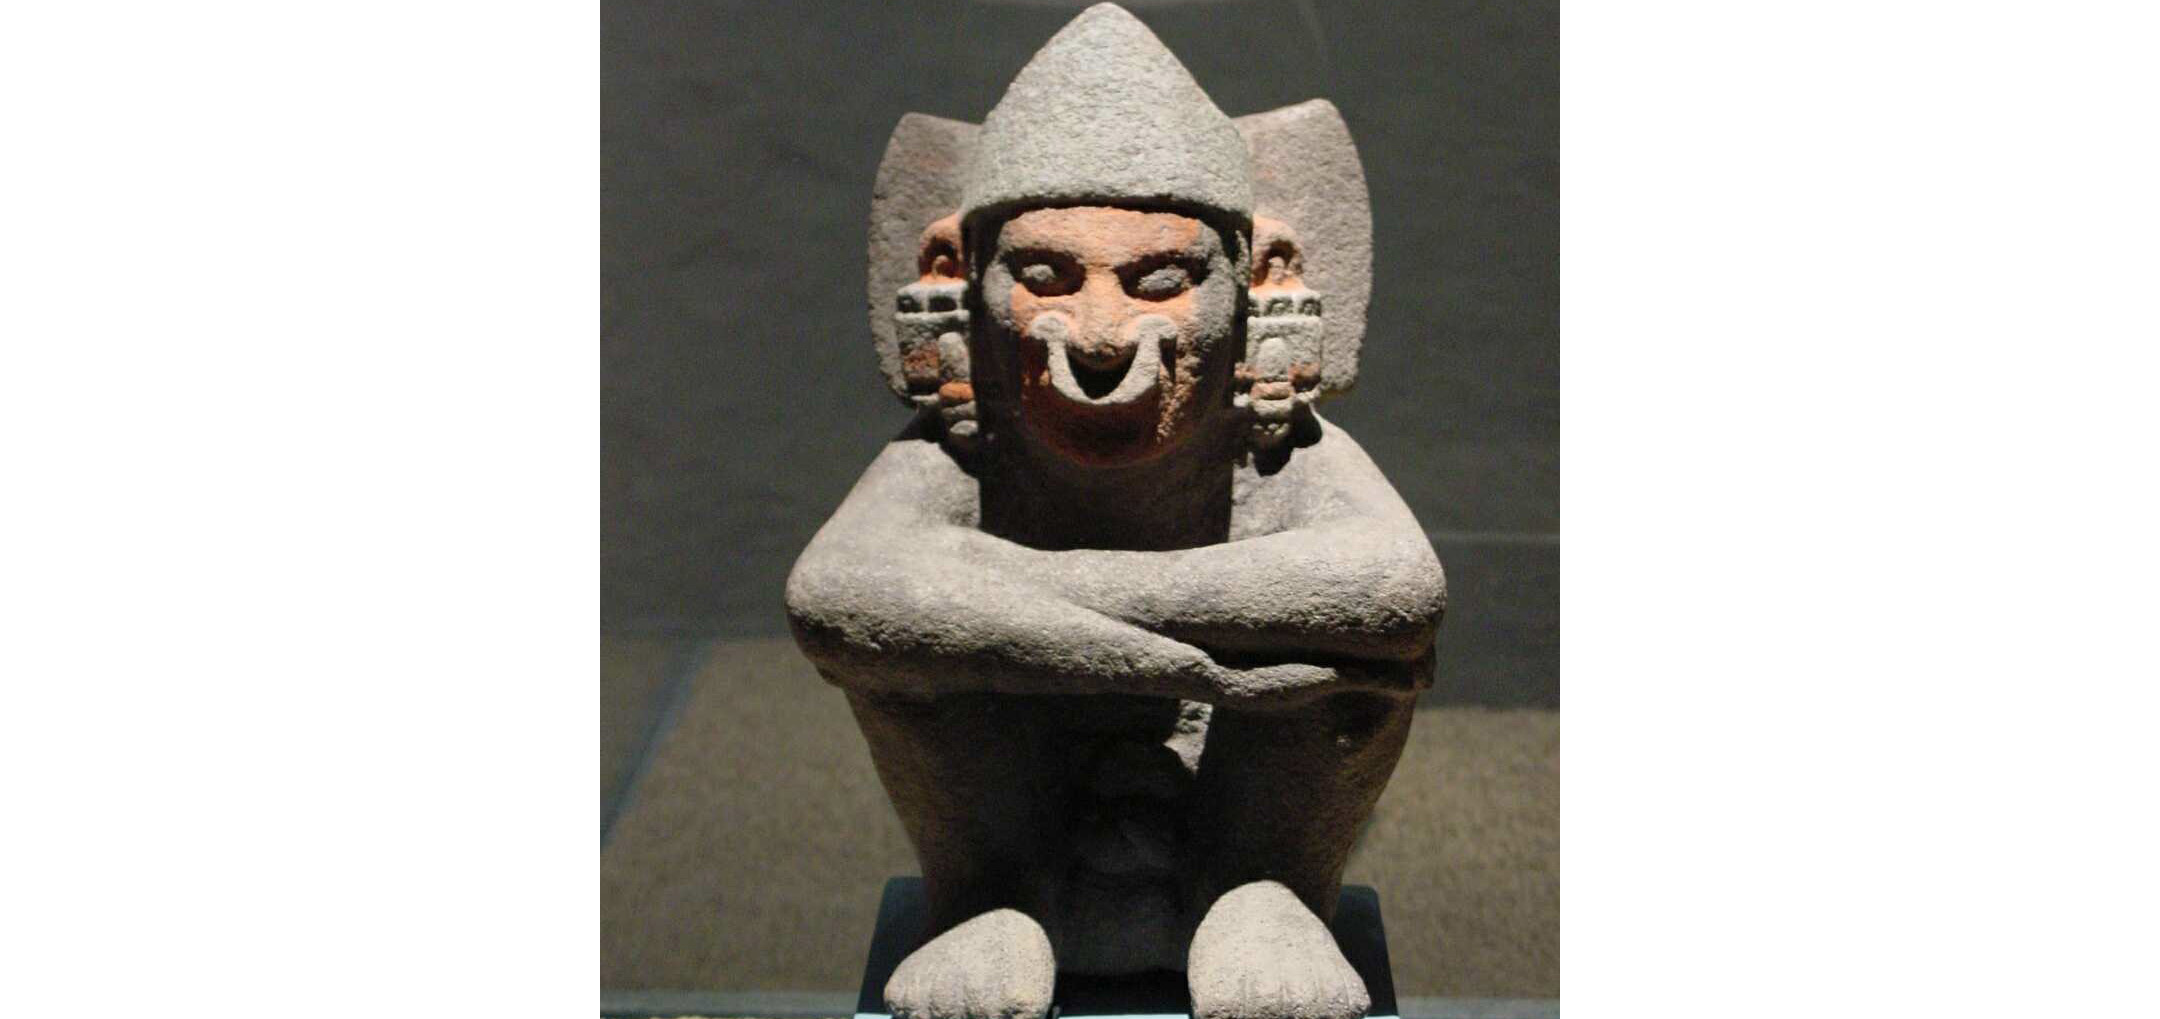 Aztecas y sacrificios humanos. ¿Te atreves a saber más?